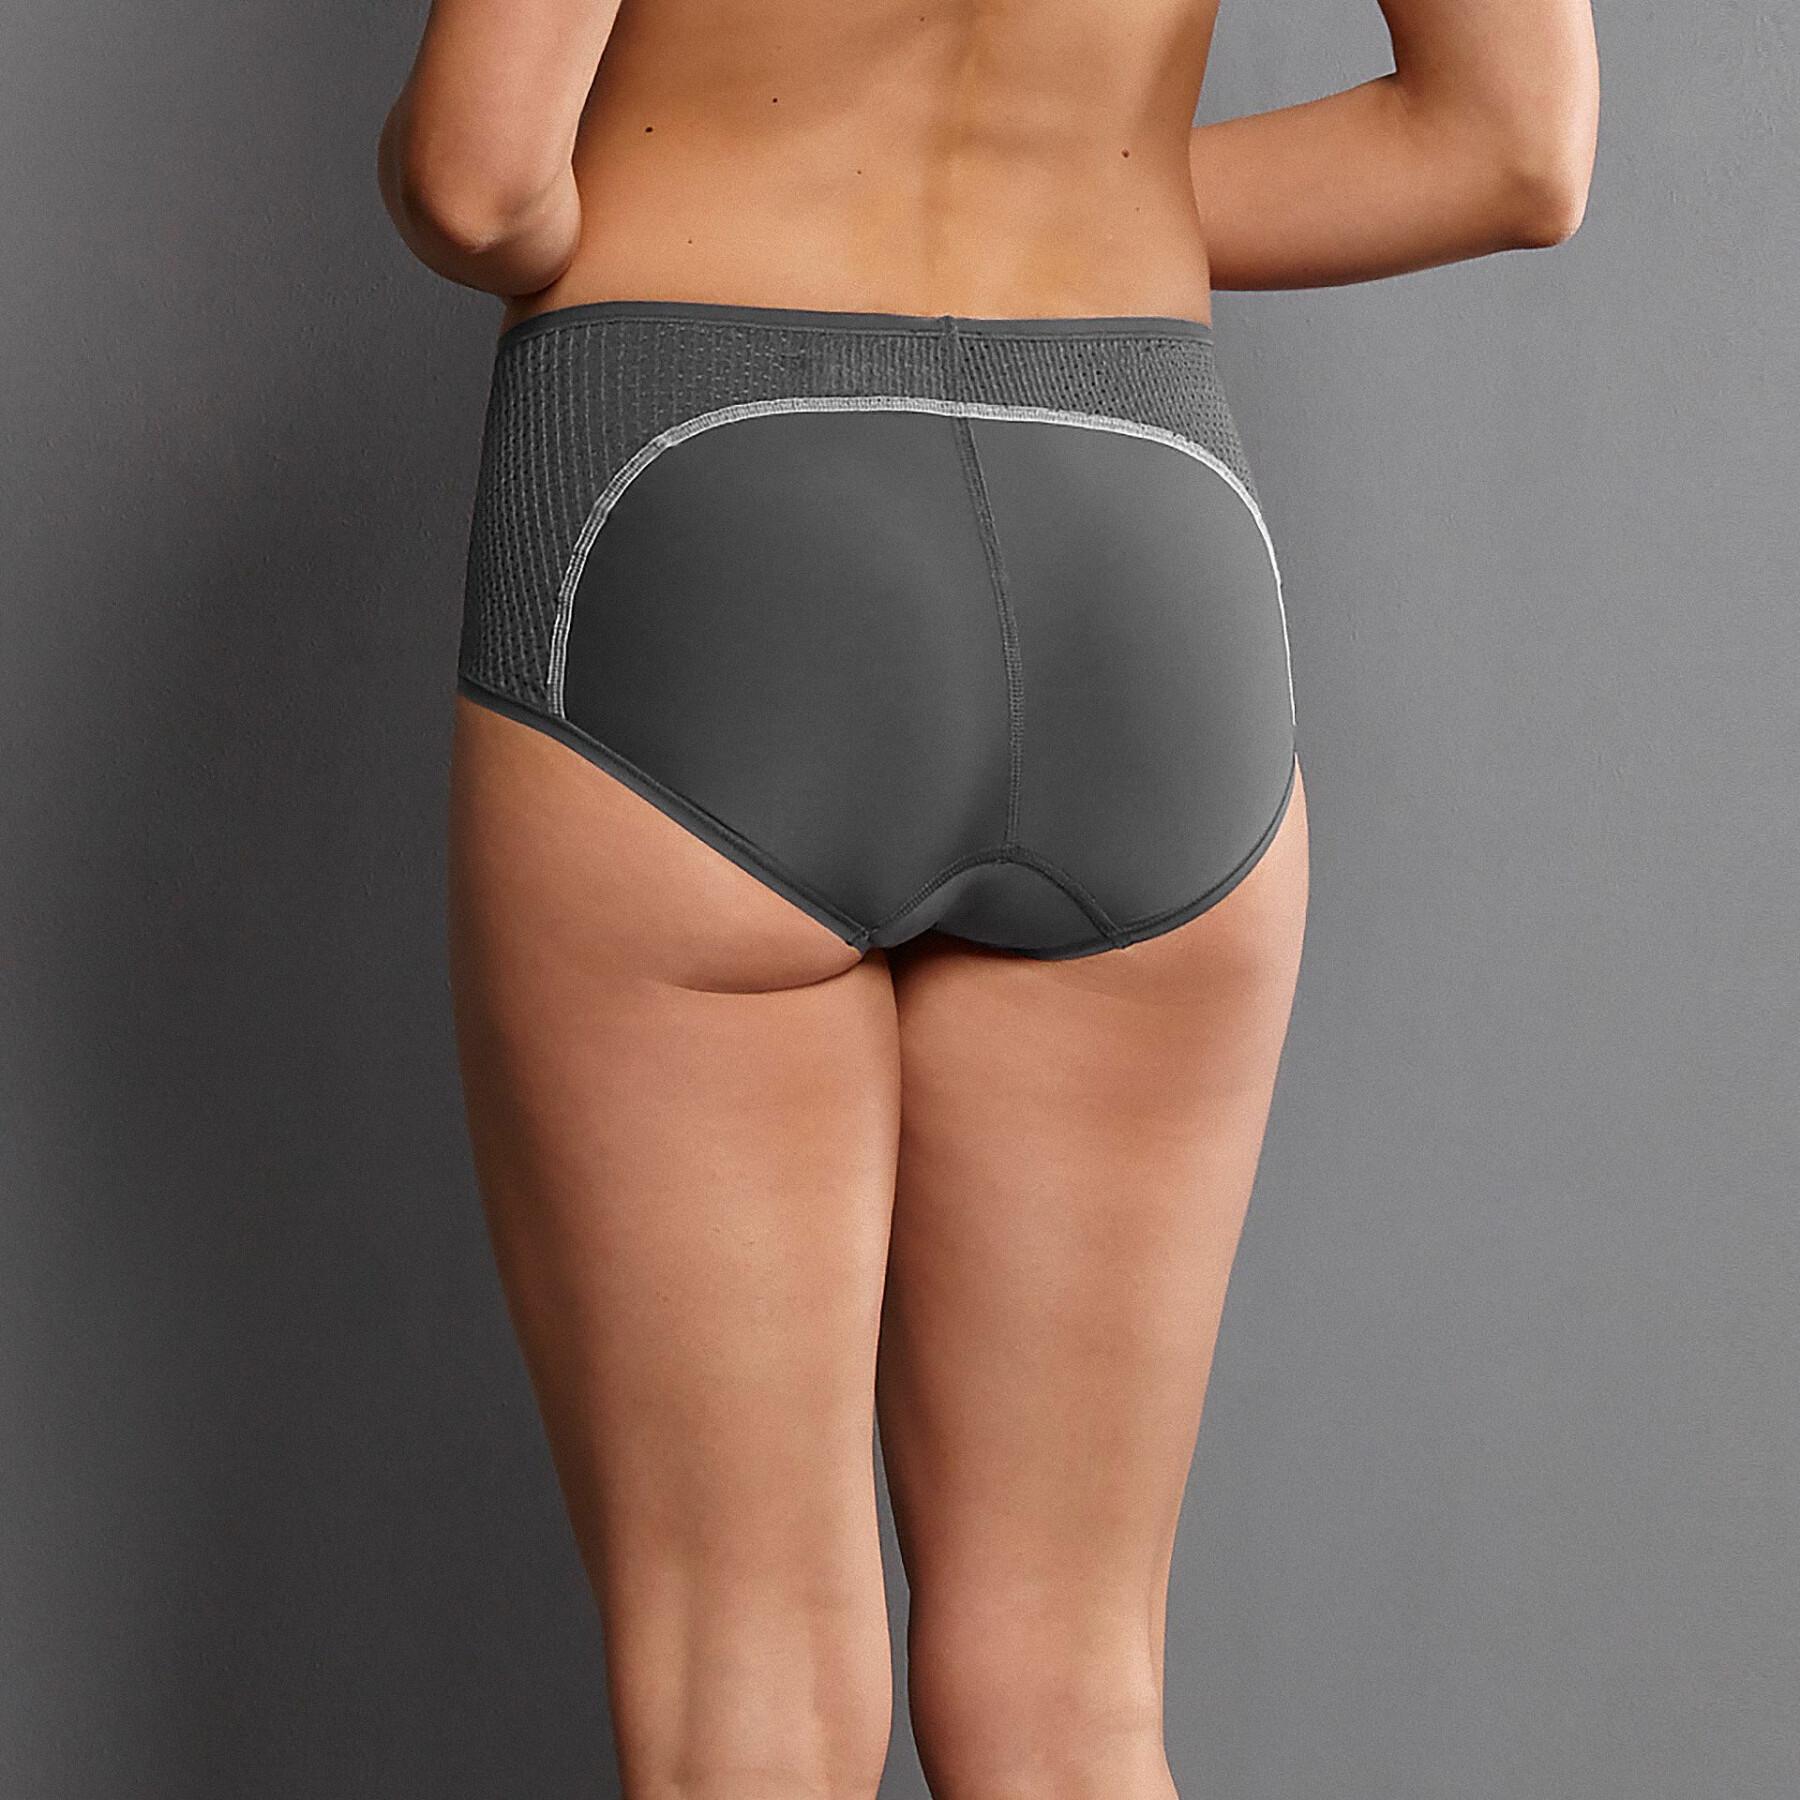 Women's panties Anita Panty Sport